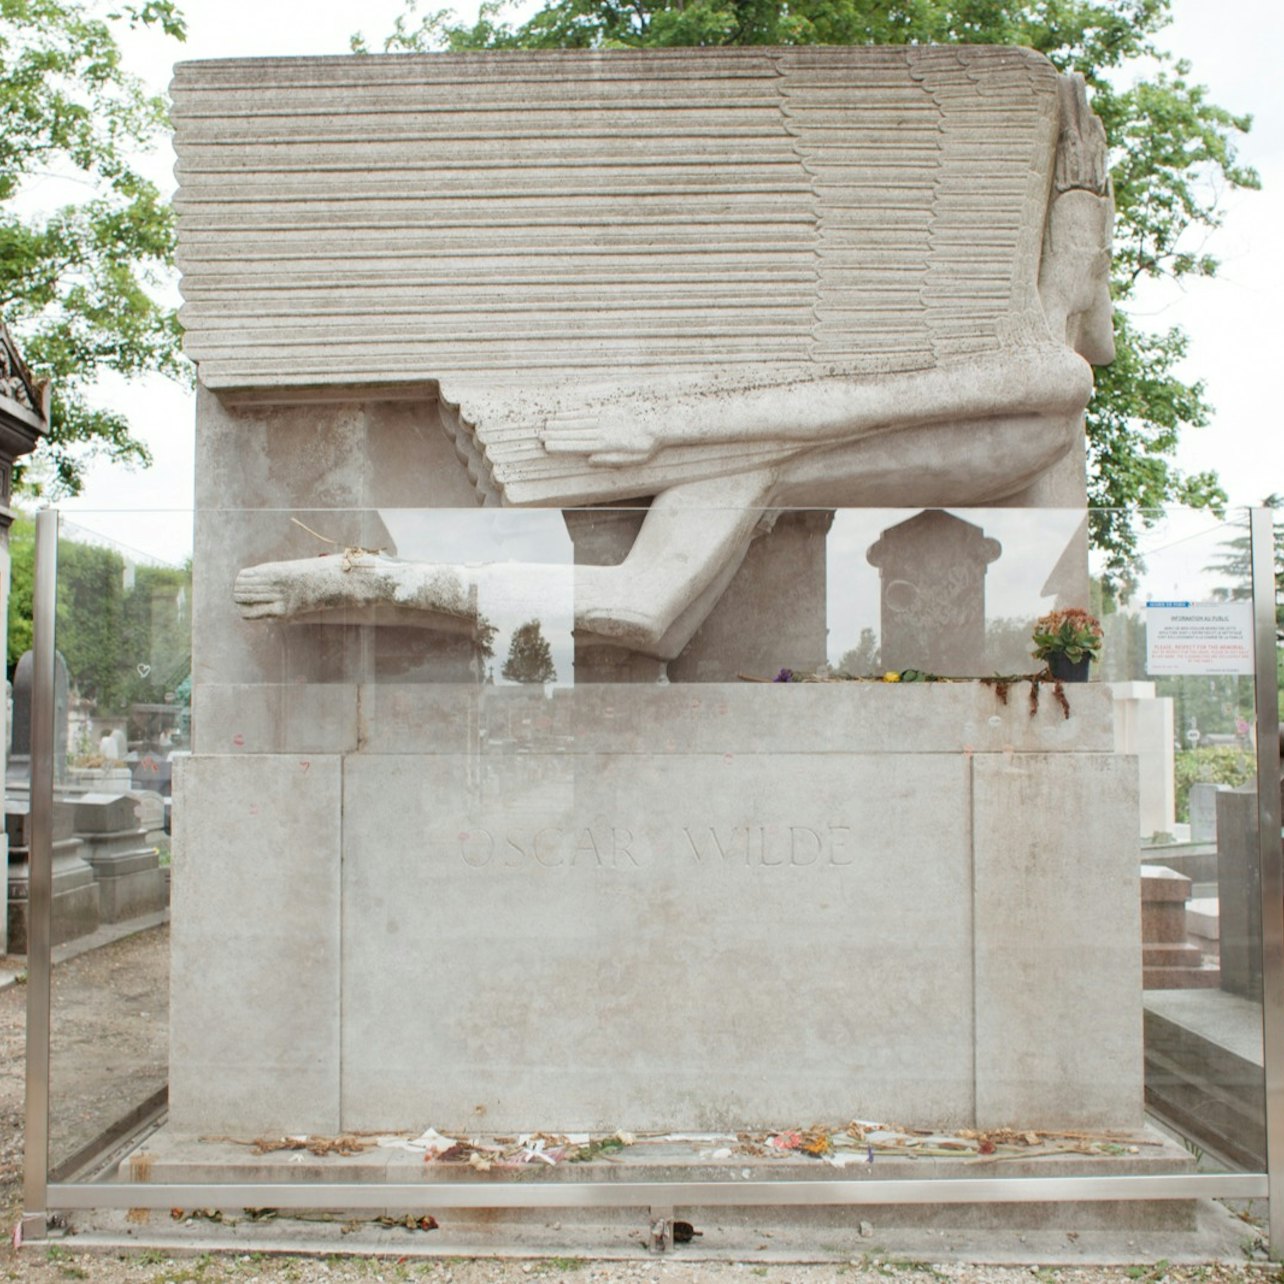 Visita guiada a pie al cementerio del Père Lachaise - Alojamientos en Paris